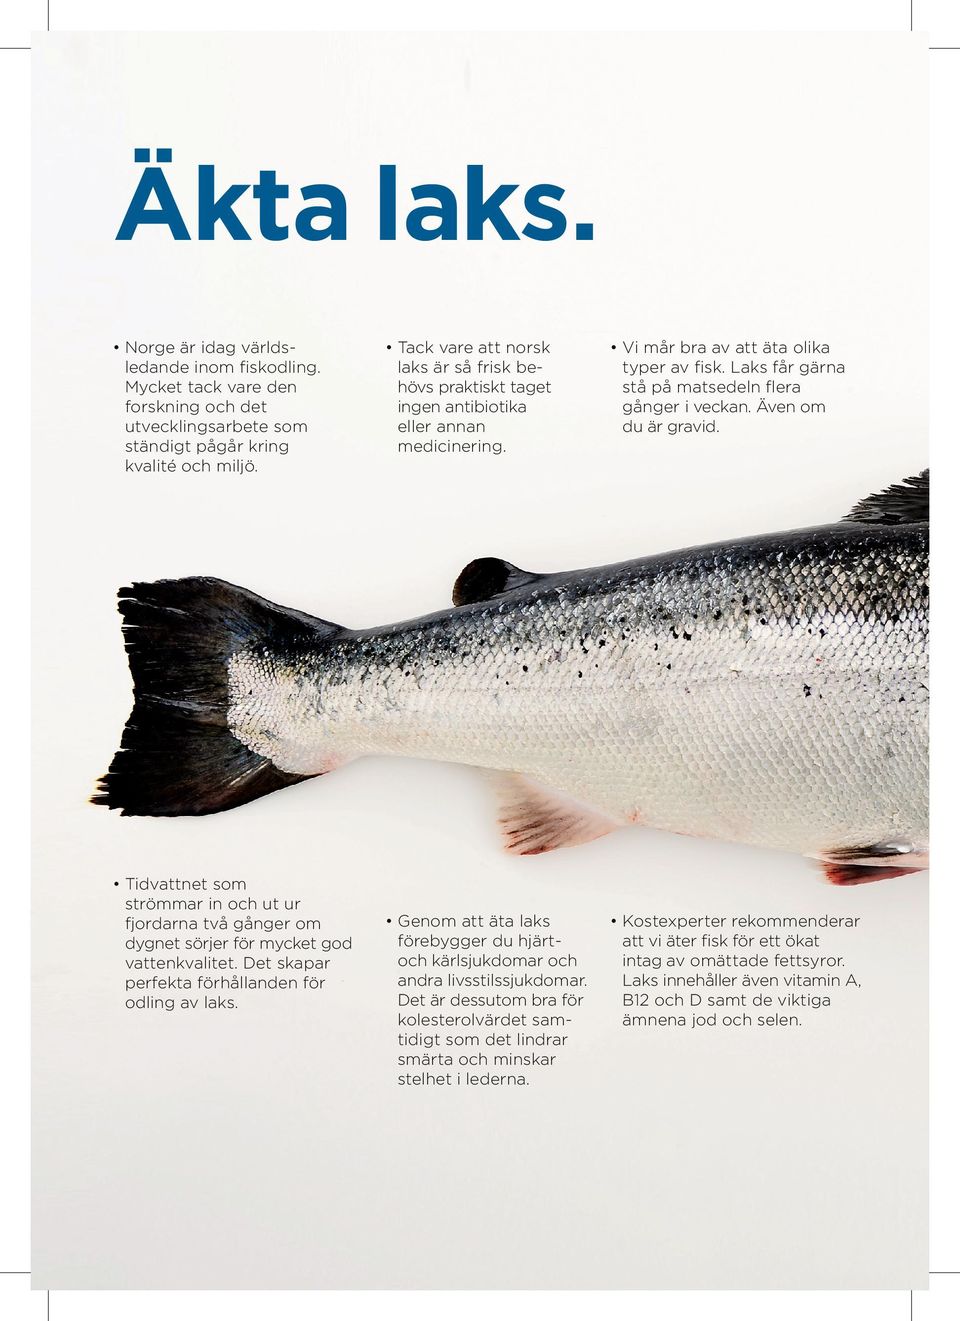 Tack vare att norsk laks är så frisk be hövs praktiskt taget ingen antibiotika eller annan medicinering. Vi mår bra av att äta olika typer av fisk.